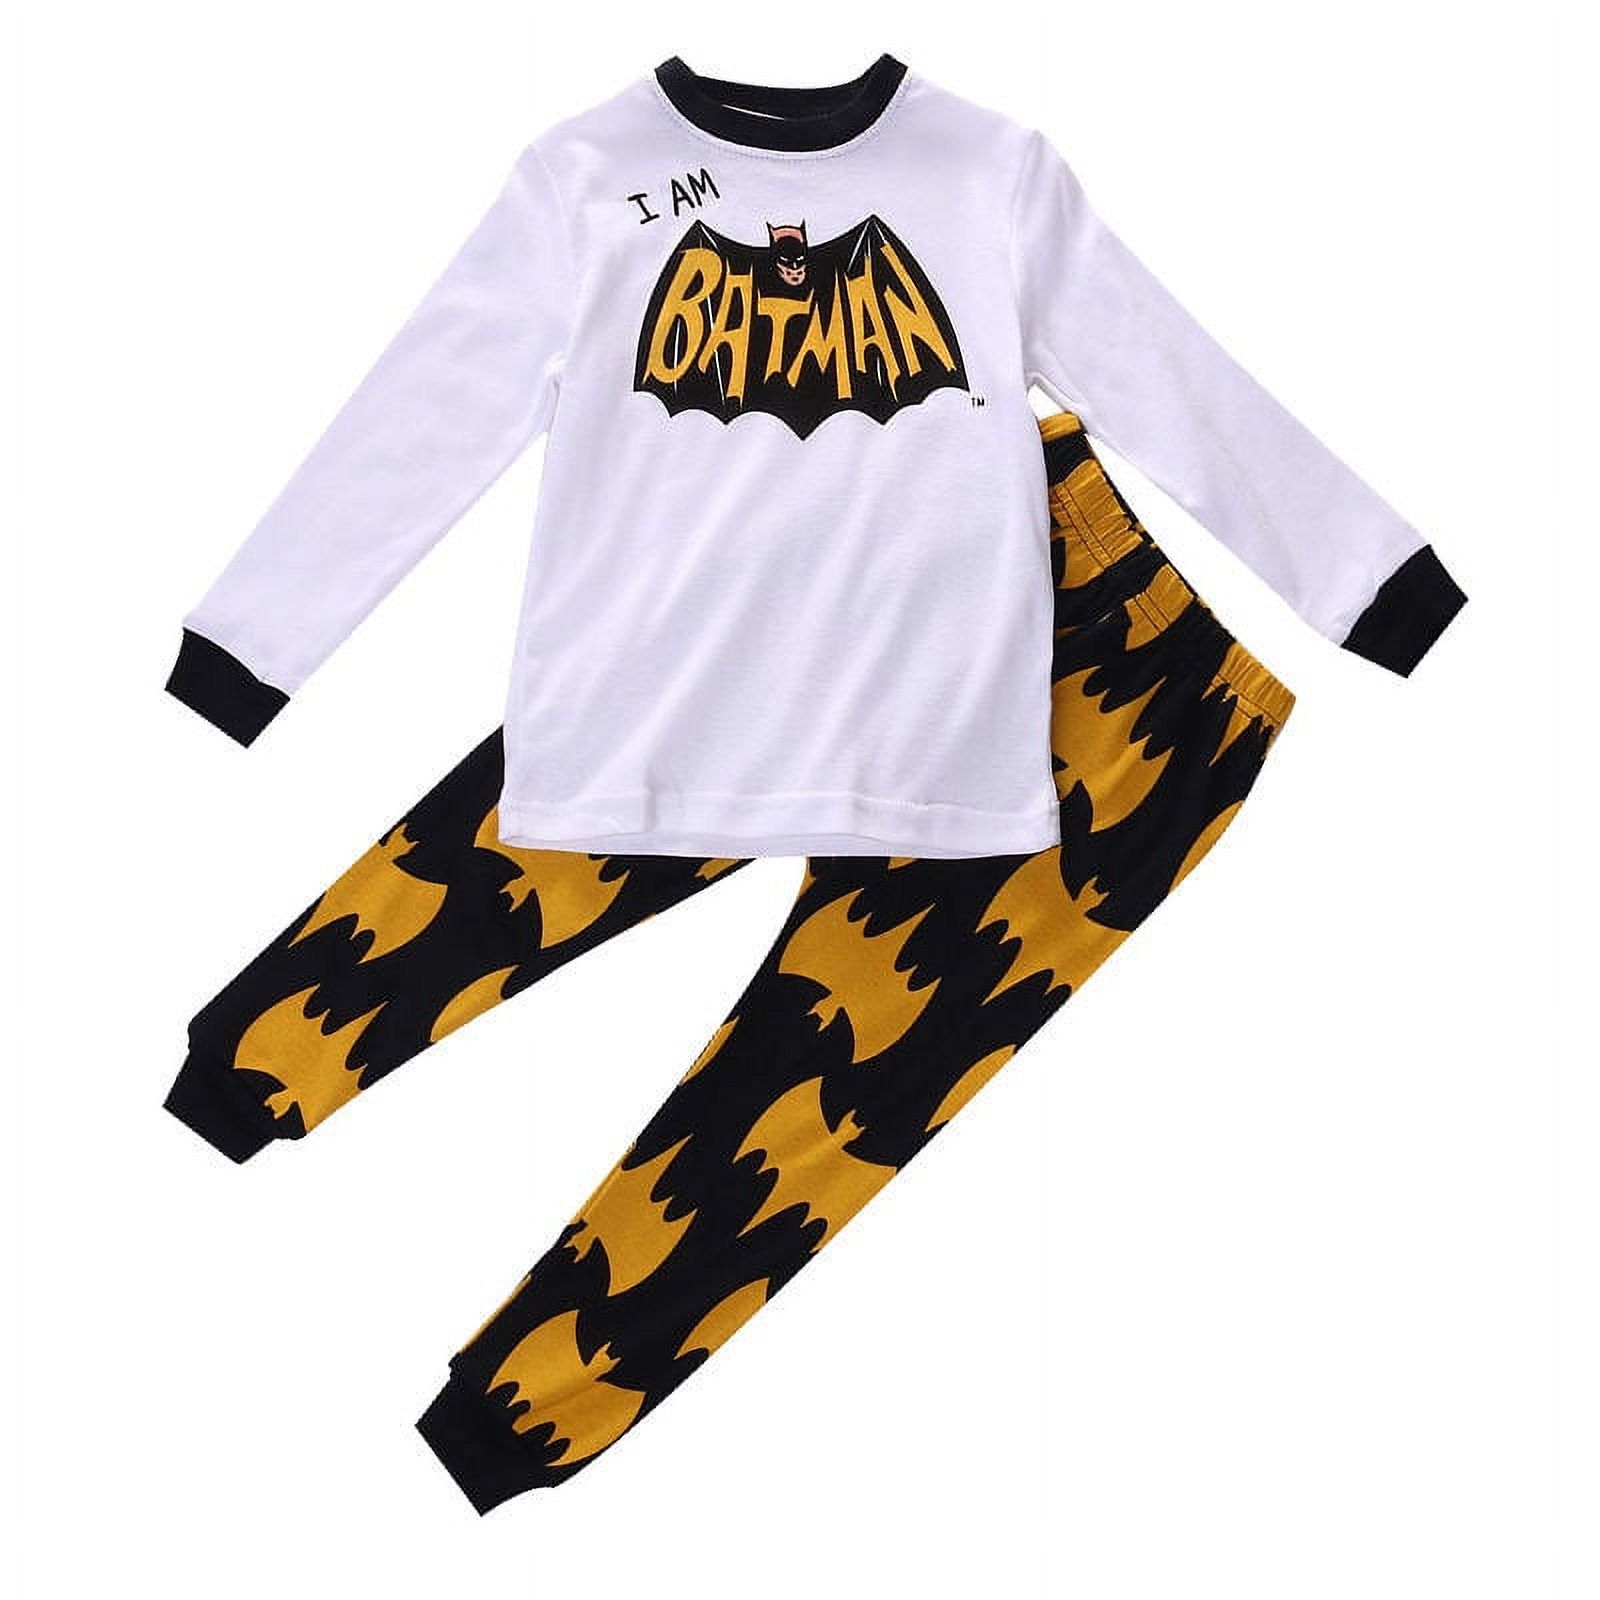 Hirigin Lovely Kids Boys Girls Spider Man Batman Warm Cotton Pajamas Set Sleepwear Nightwear Pajamas Set 2-8Y - image 1 of 1